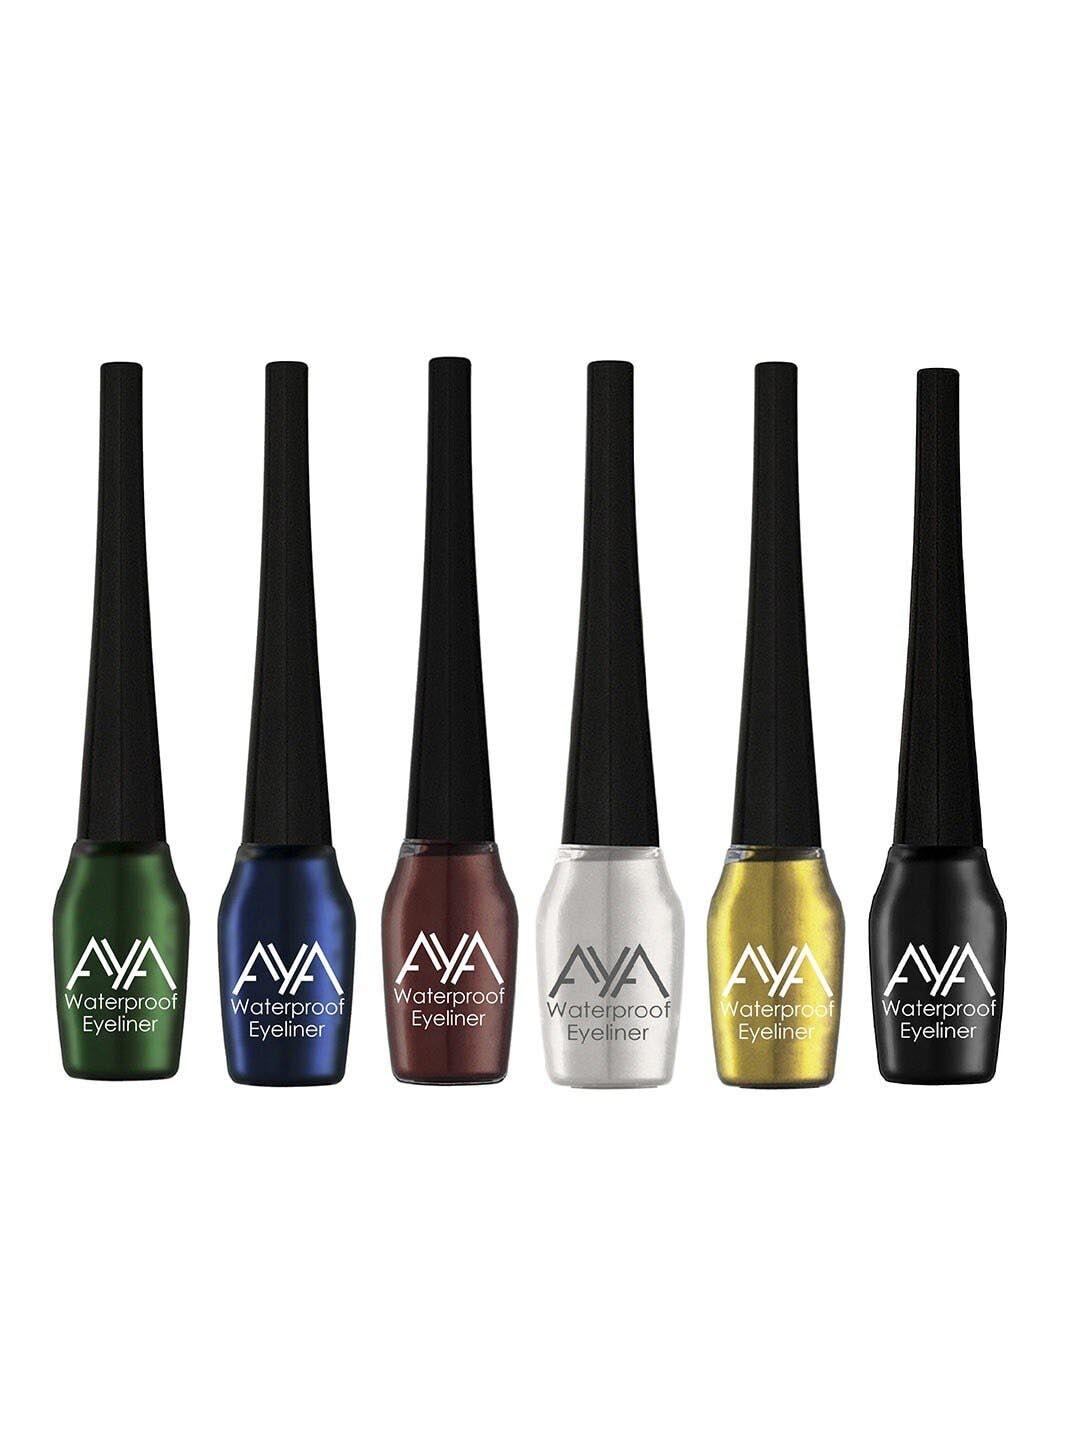 AYA Set Of 6 Long Lasting & Waterproof Liquid Eyeliners - 5ml Each